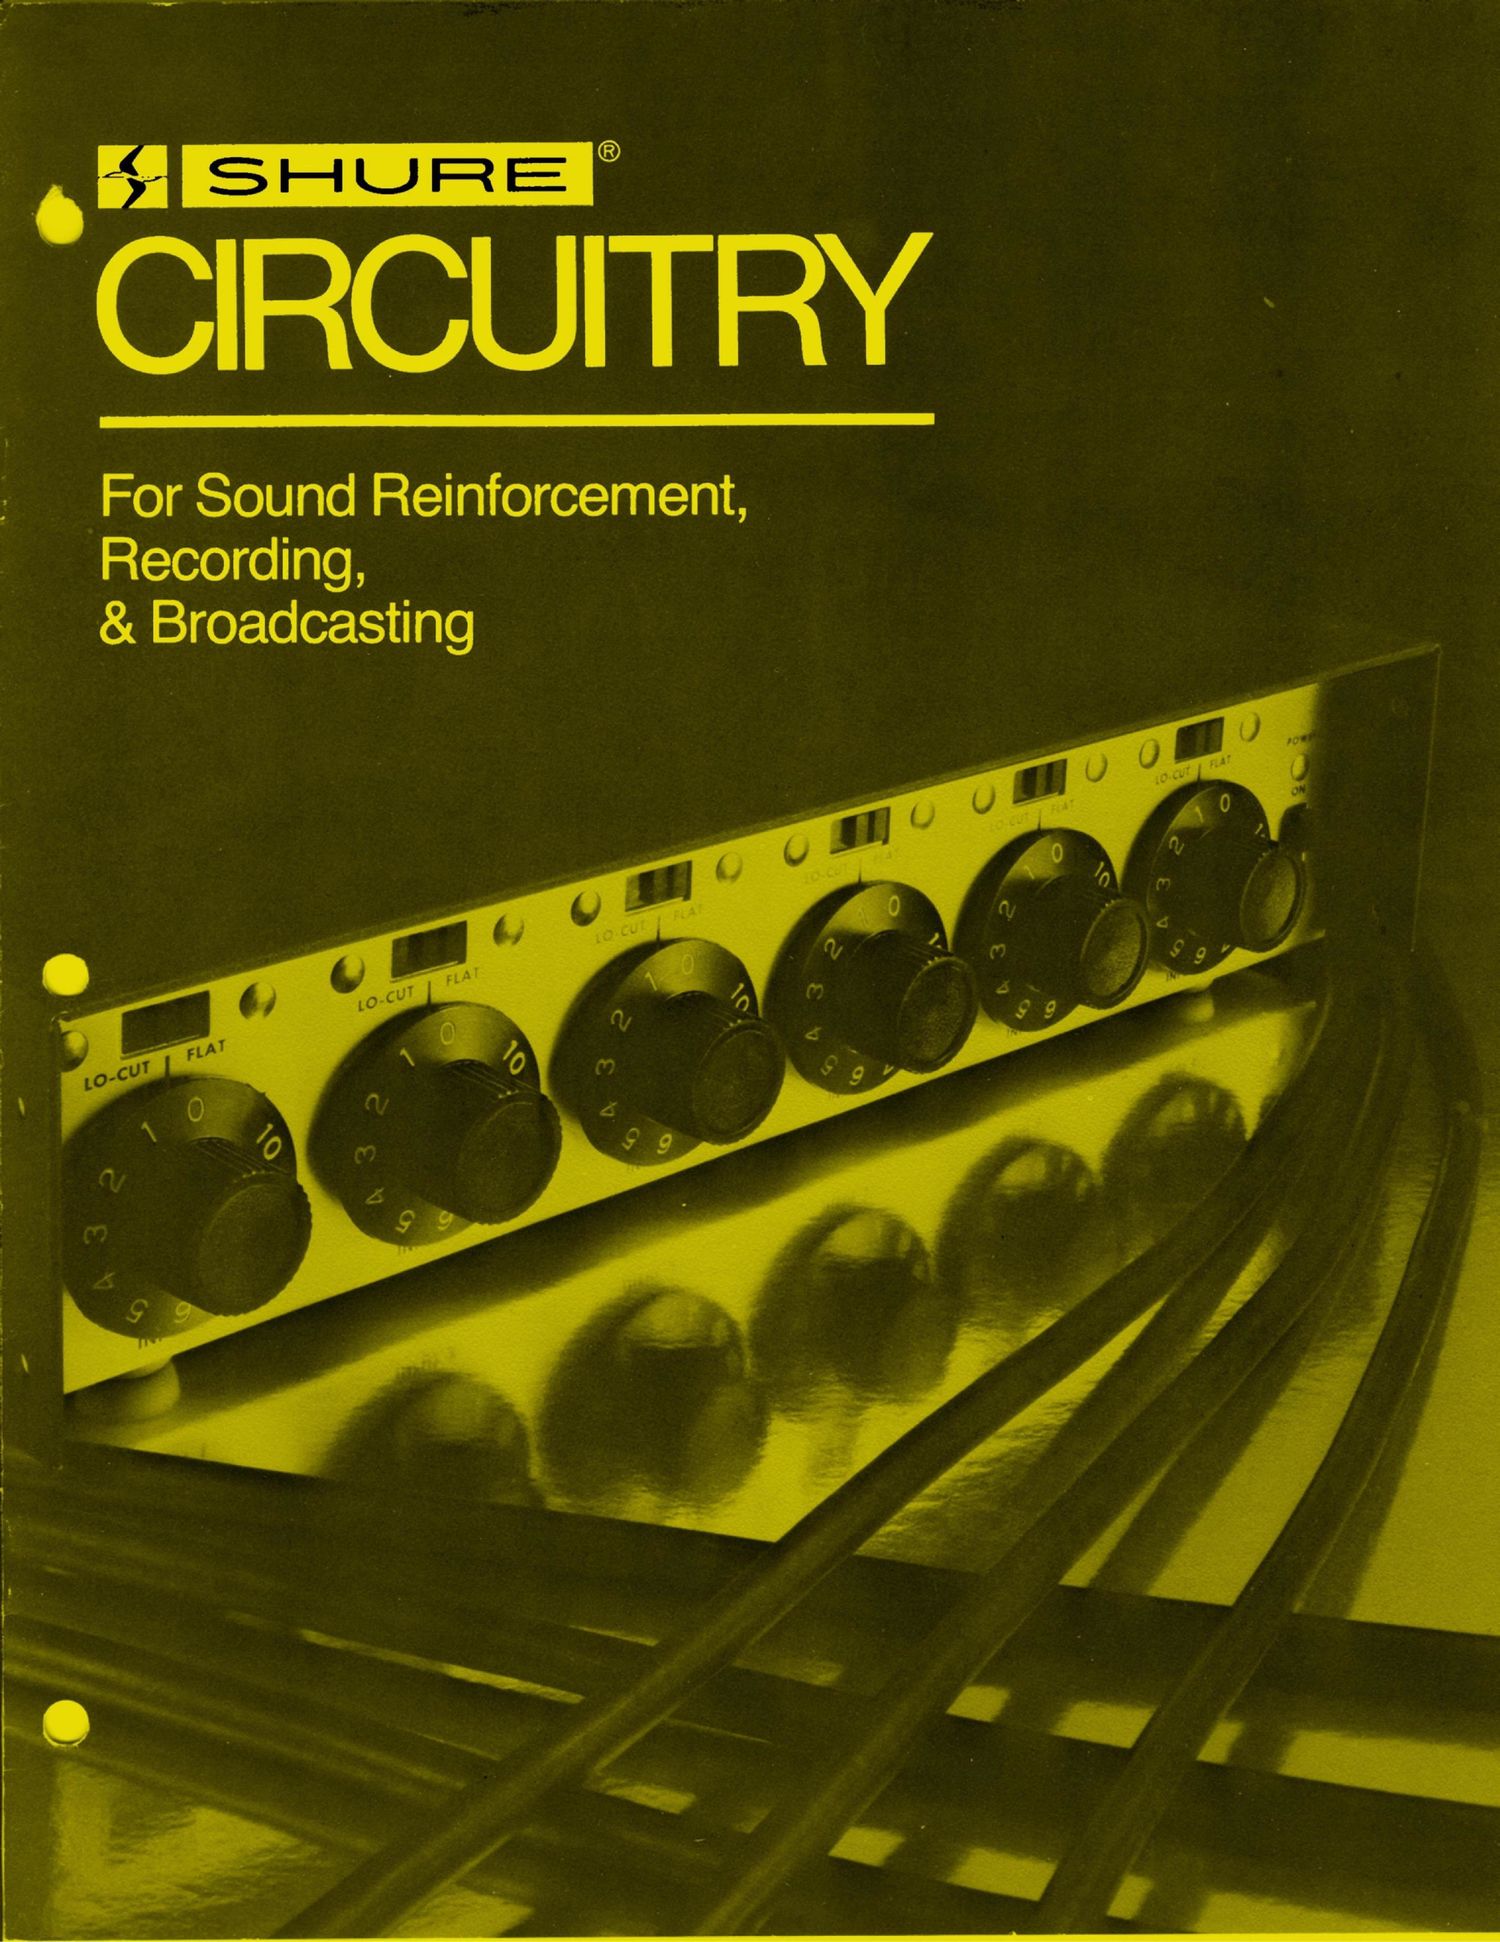 shure 1976 catalogue circuitry